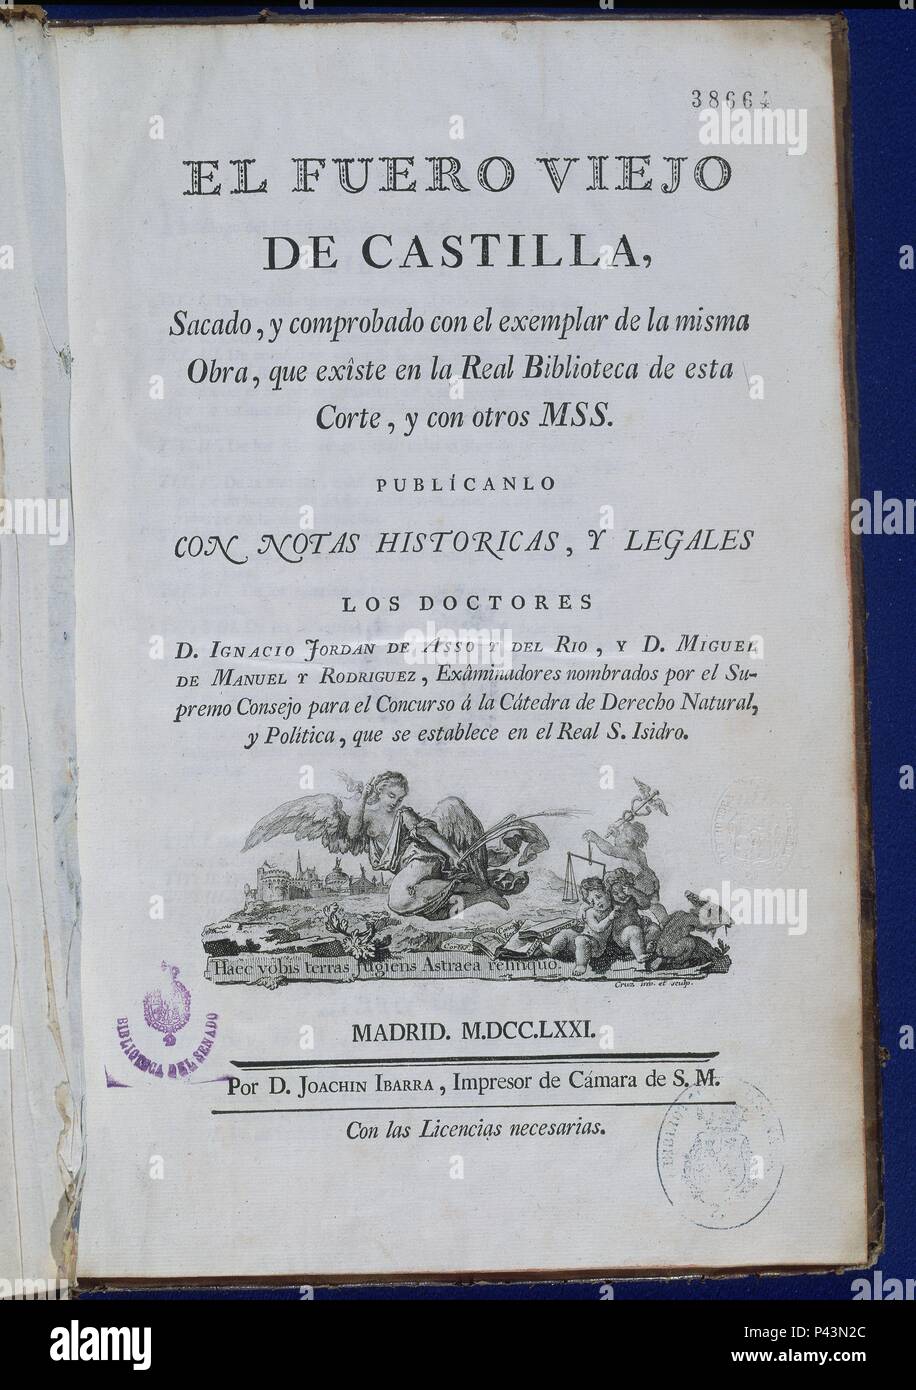 EL FUERO VIEJO DE CASTILLA - PUBLICADO CON NOTAS HISTORICAS Y LEGALES POR DON IGNACIO JORDAN - 1771. Location: SENADO-BIBLIOTECA-COLECCION, MADRID, SPAIN. Stock Photo